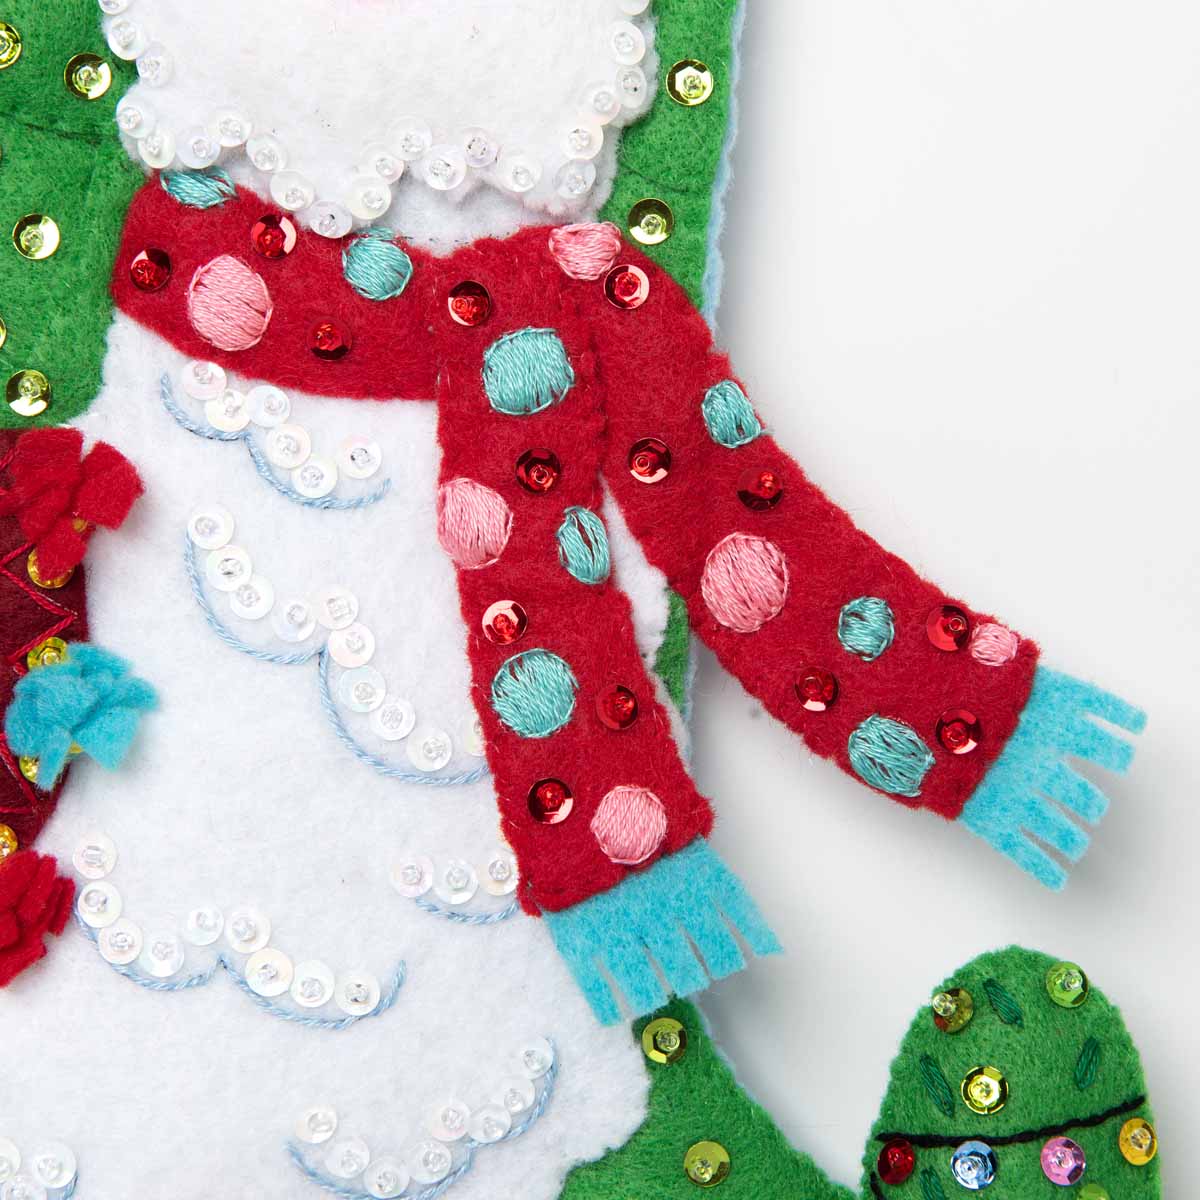 Bucilla ® Seasonal - Felt - Stocking Kits - Christmas Llama - 89230E